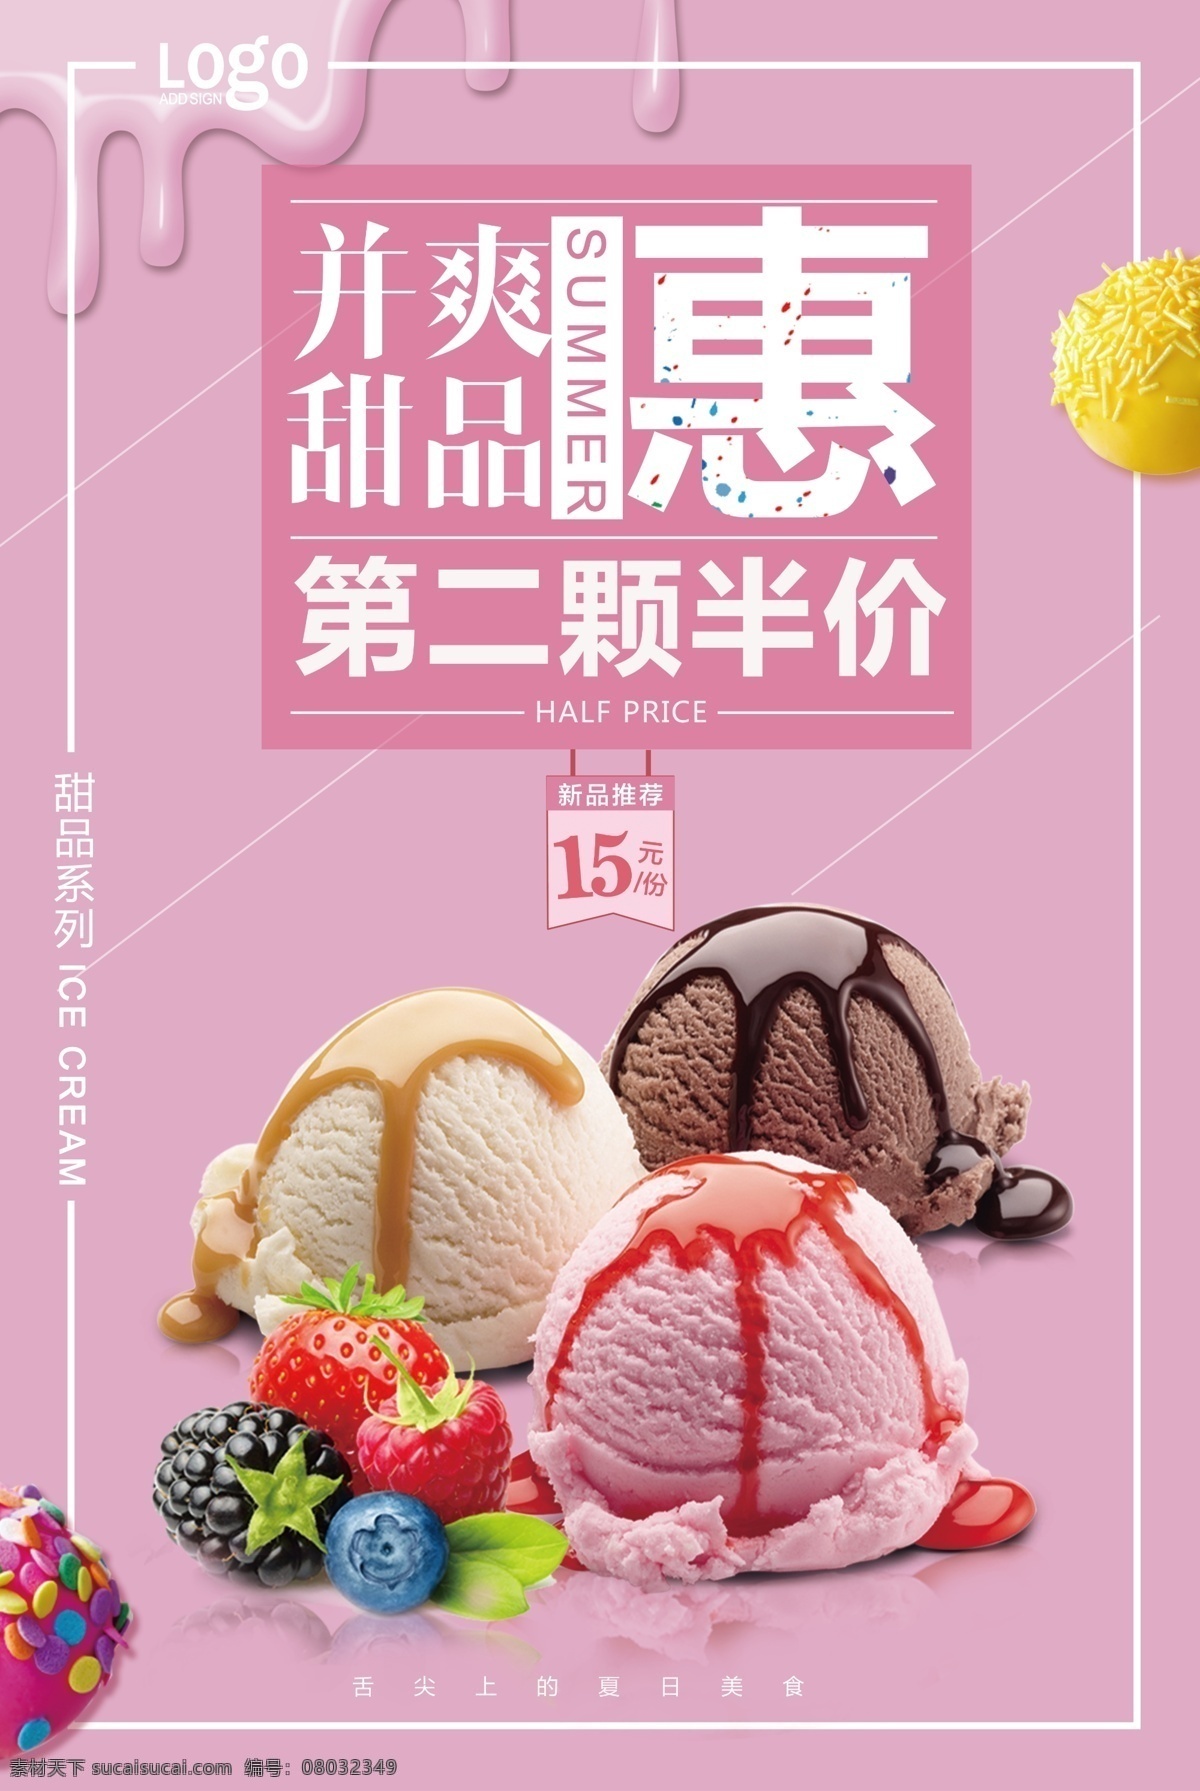 2017 年 粉色 少女 系 冰 激 淋 甜品 折扣 海报 粉色海报 折扣海报 冰激淋 冰激淋海报 少女风 第二份半价